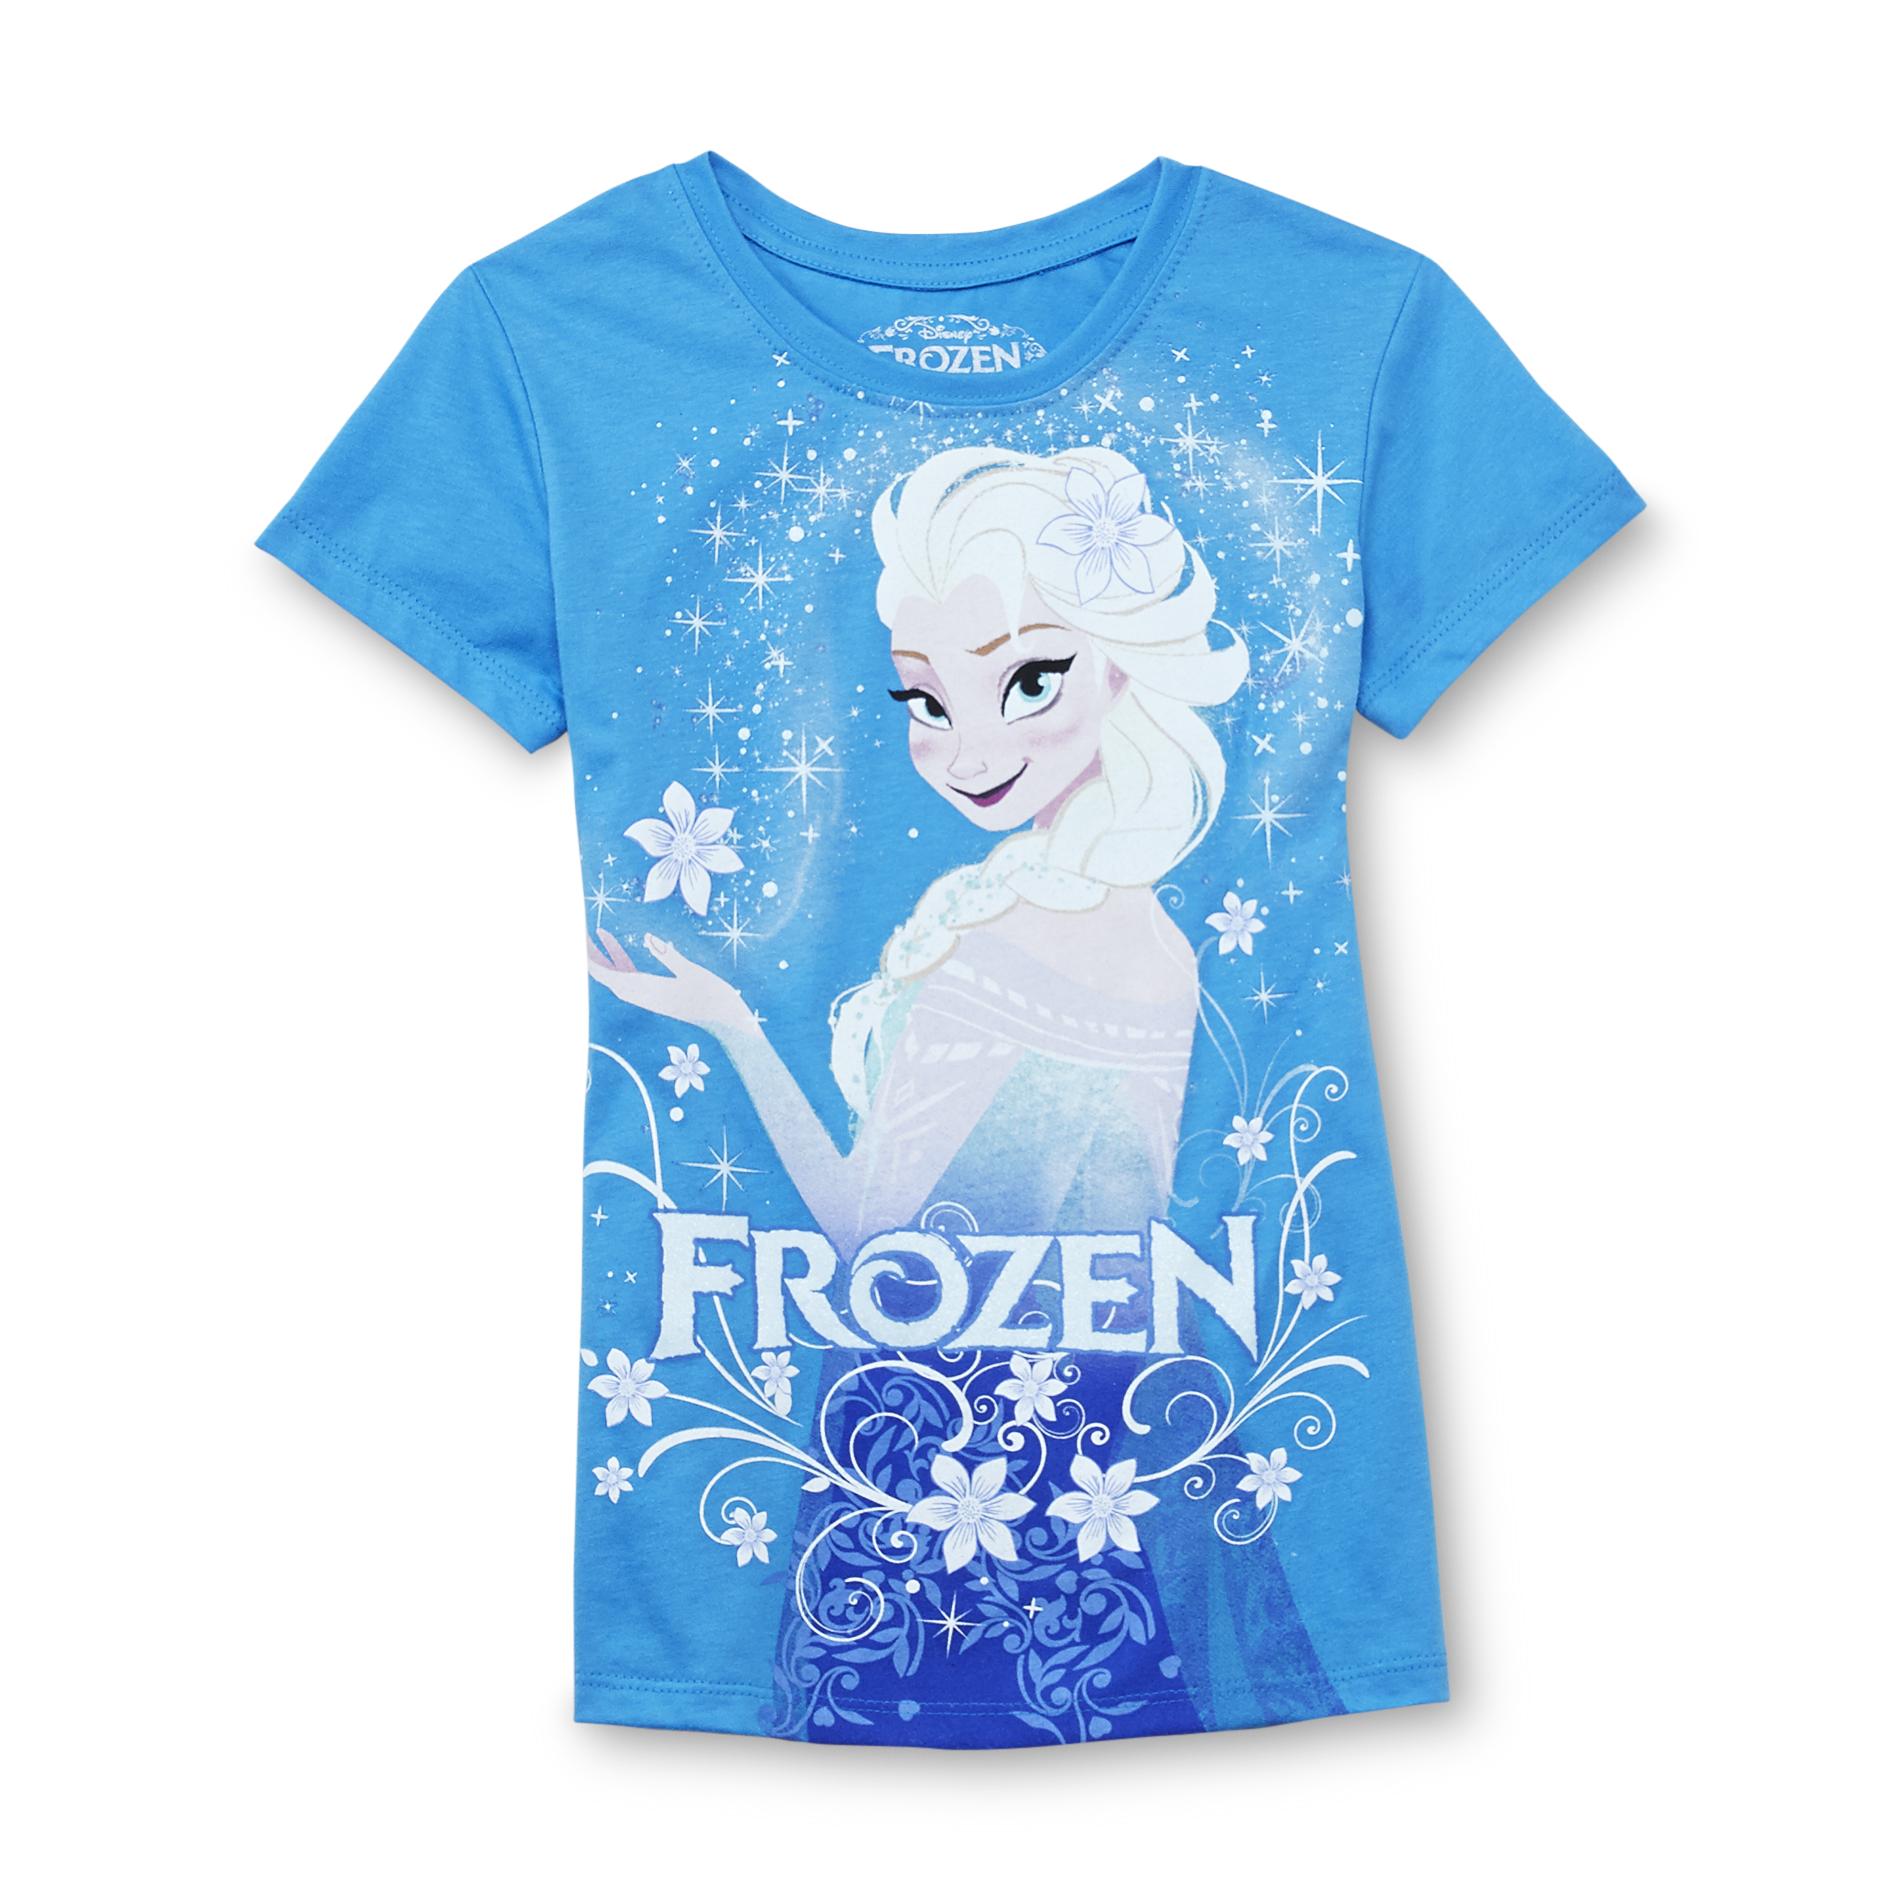 Disney Frozen Girl's Graphic T-Shirt - Elsa the Snow Queen